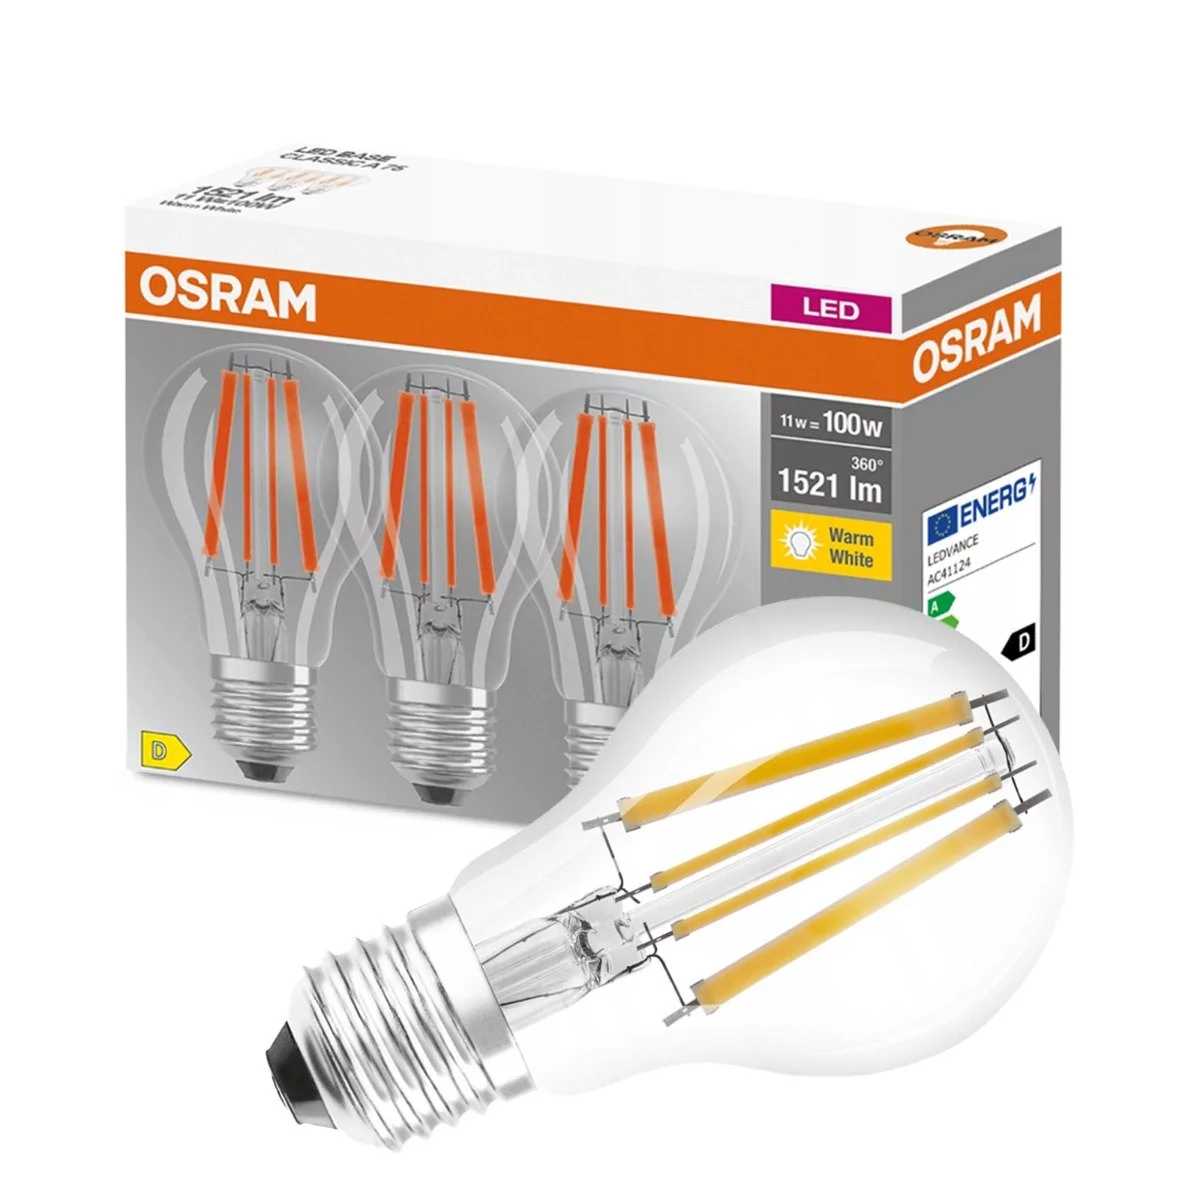 Osram żarówka filament LED E27 Base 11W 3 szt.